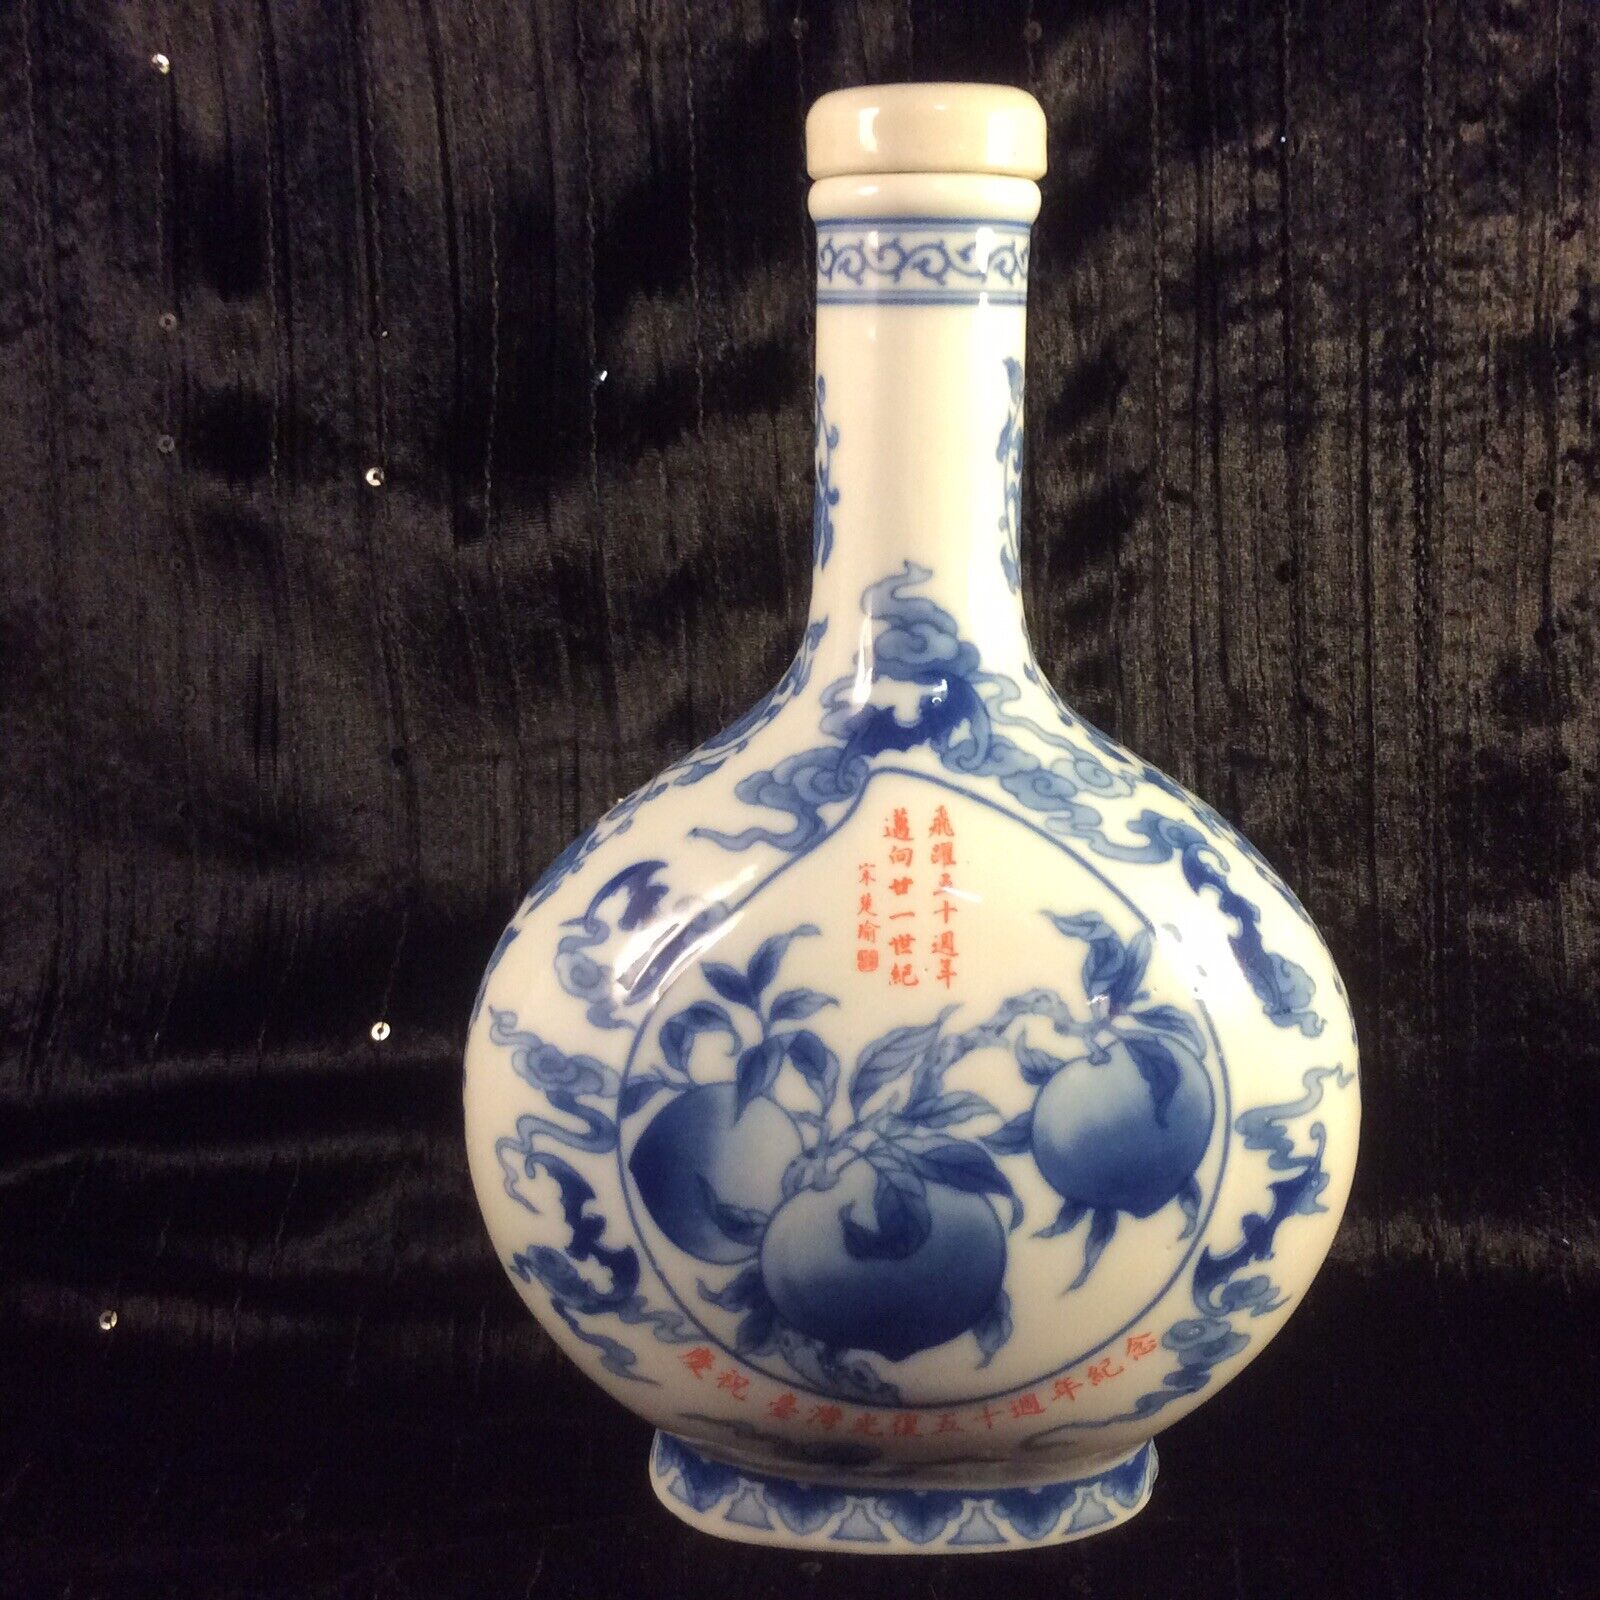 Unique Blue & White Porcelain Empty Liquor Bottle Asian Themed